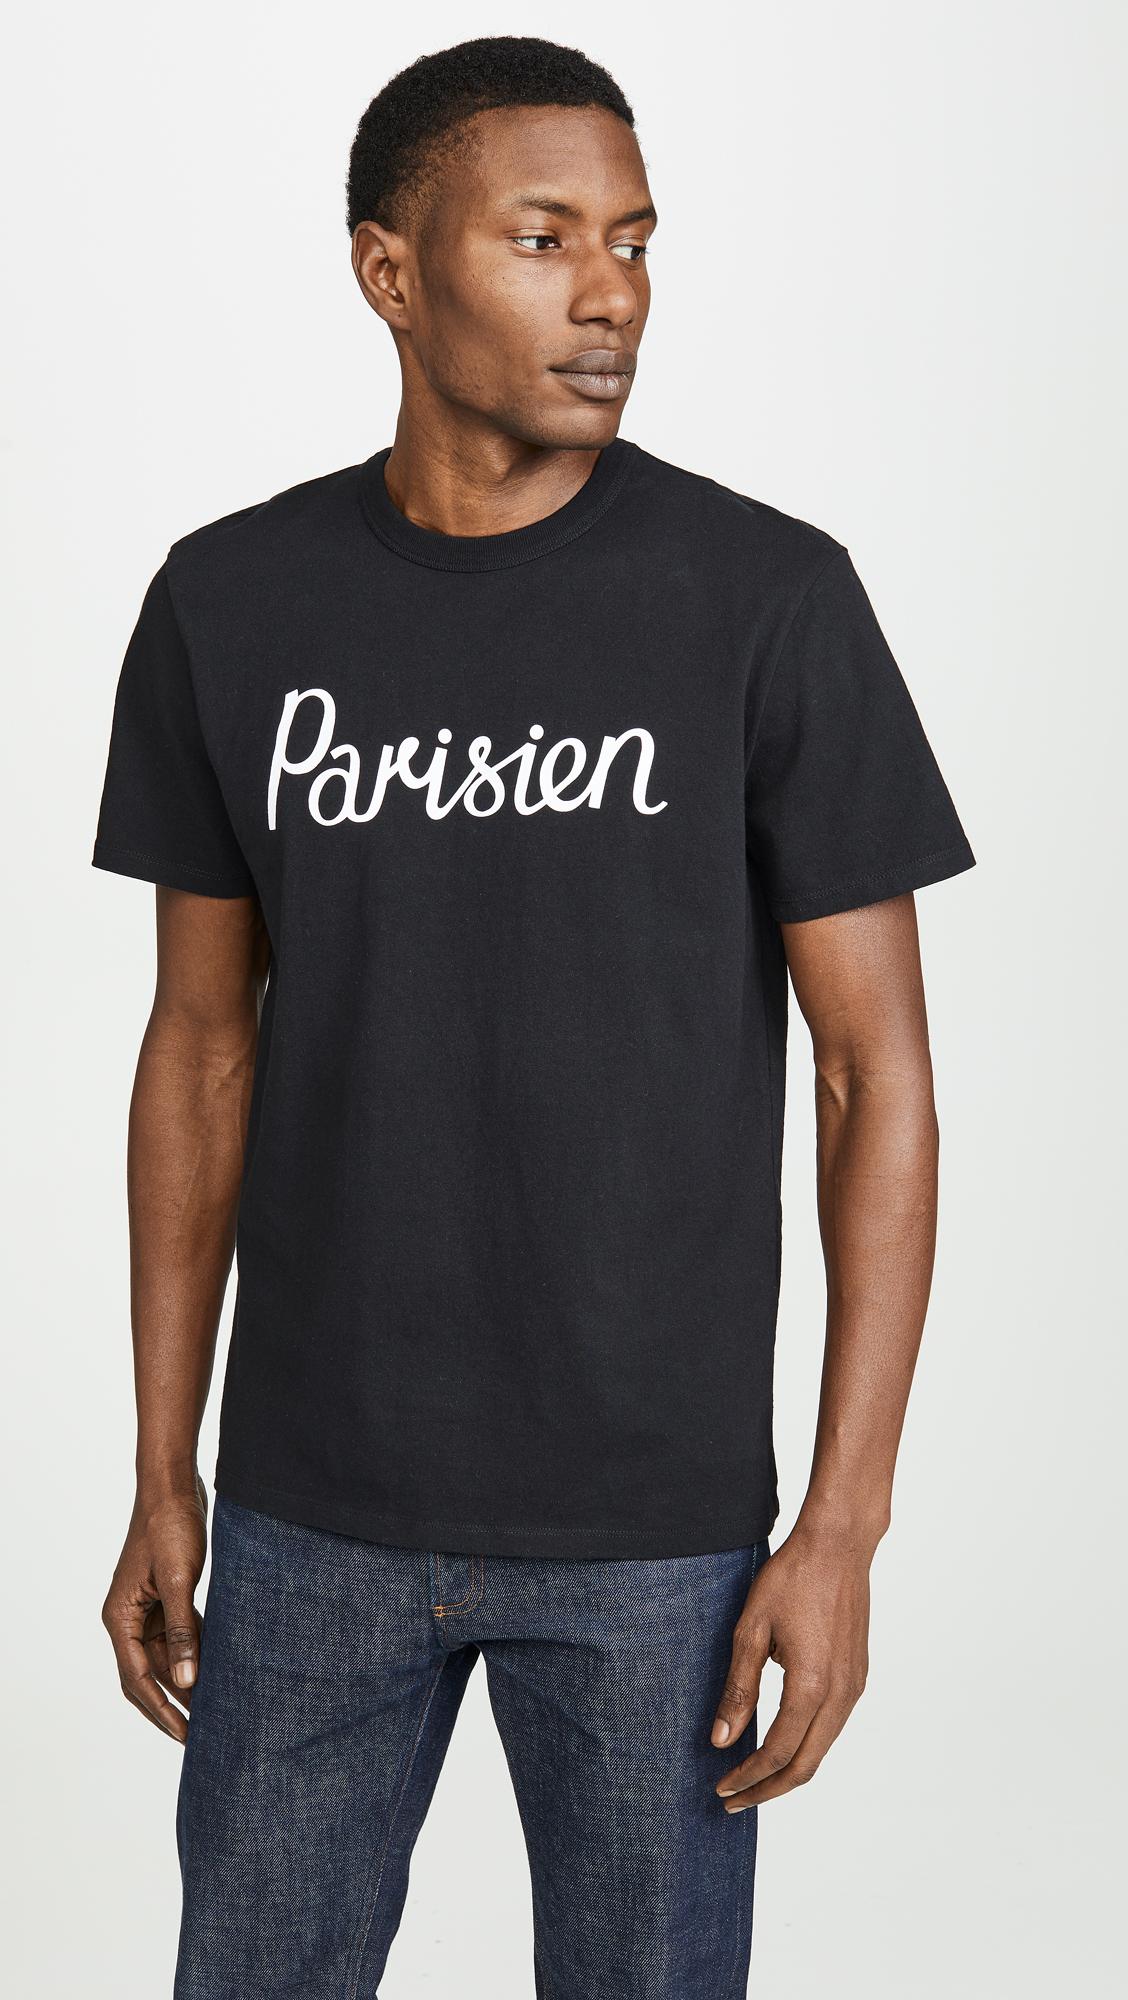 Maison Kitsuné Parisien T-shirt in Black for Men - Save 44% - Lyst